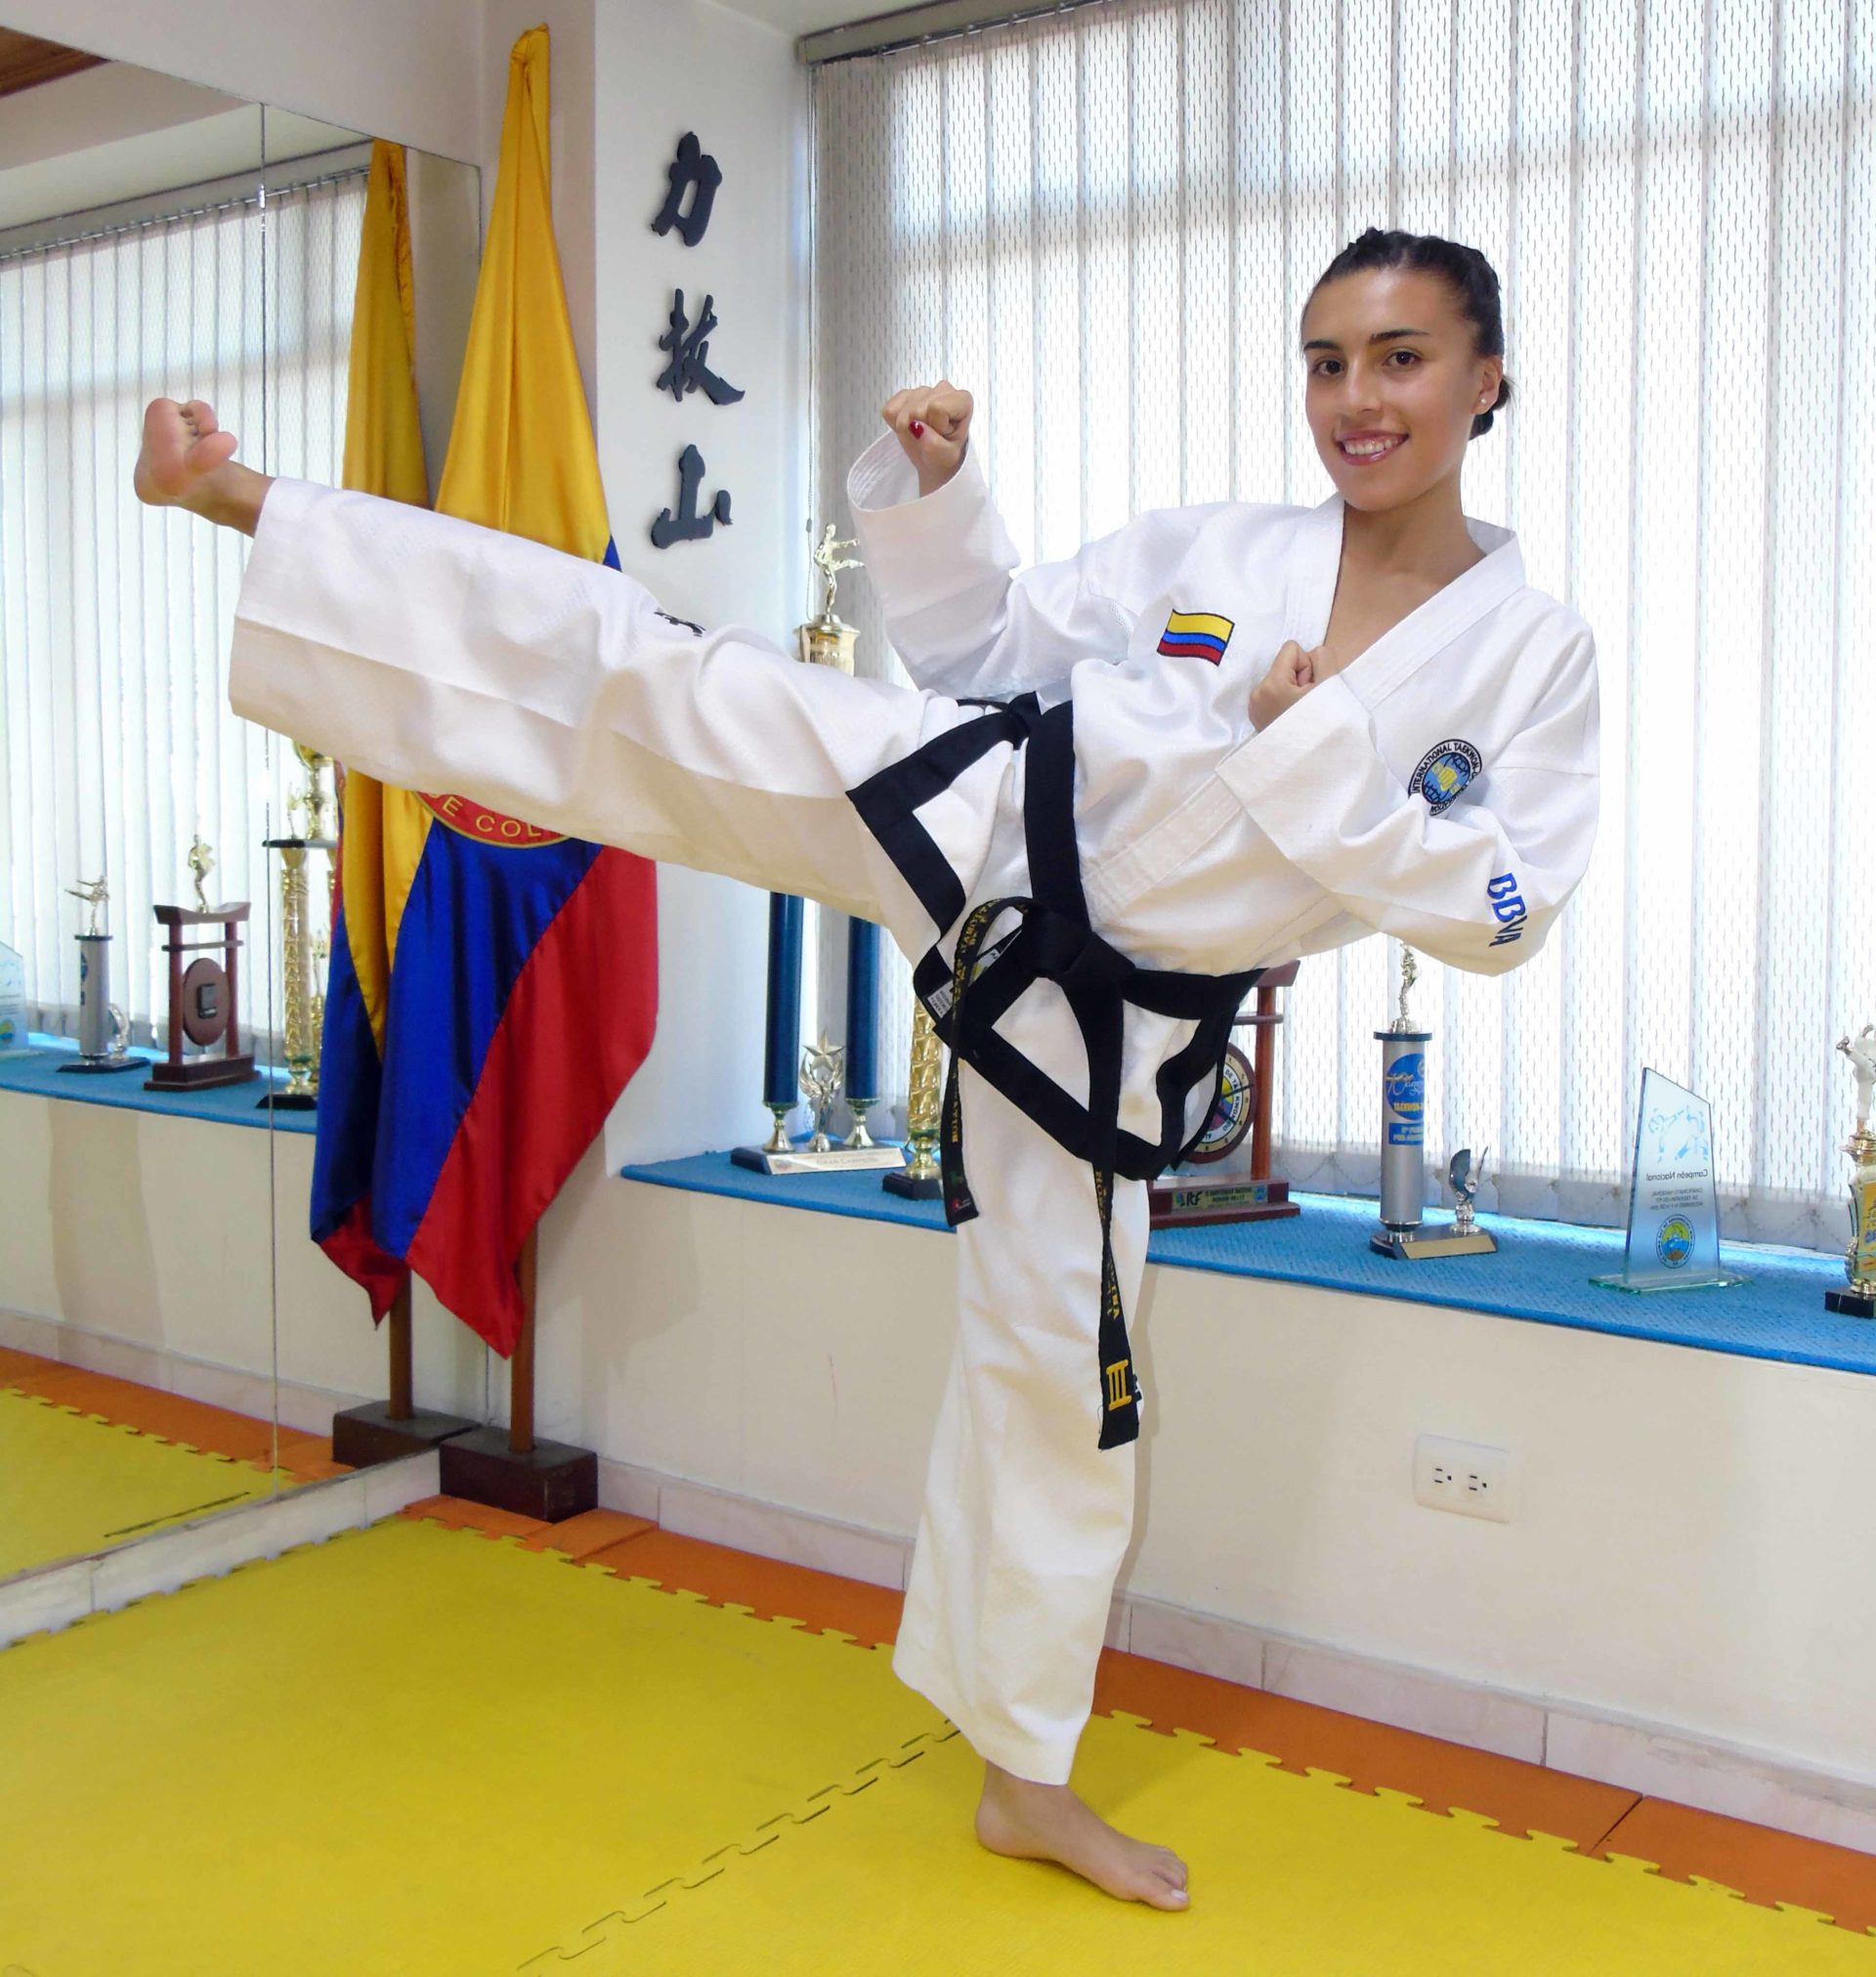 Fotografía de Honey Ospina, campeona mundial de taekwondo en figuras y medalla de oro en la pasada Copa Mightyfist de Buenos Aires